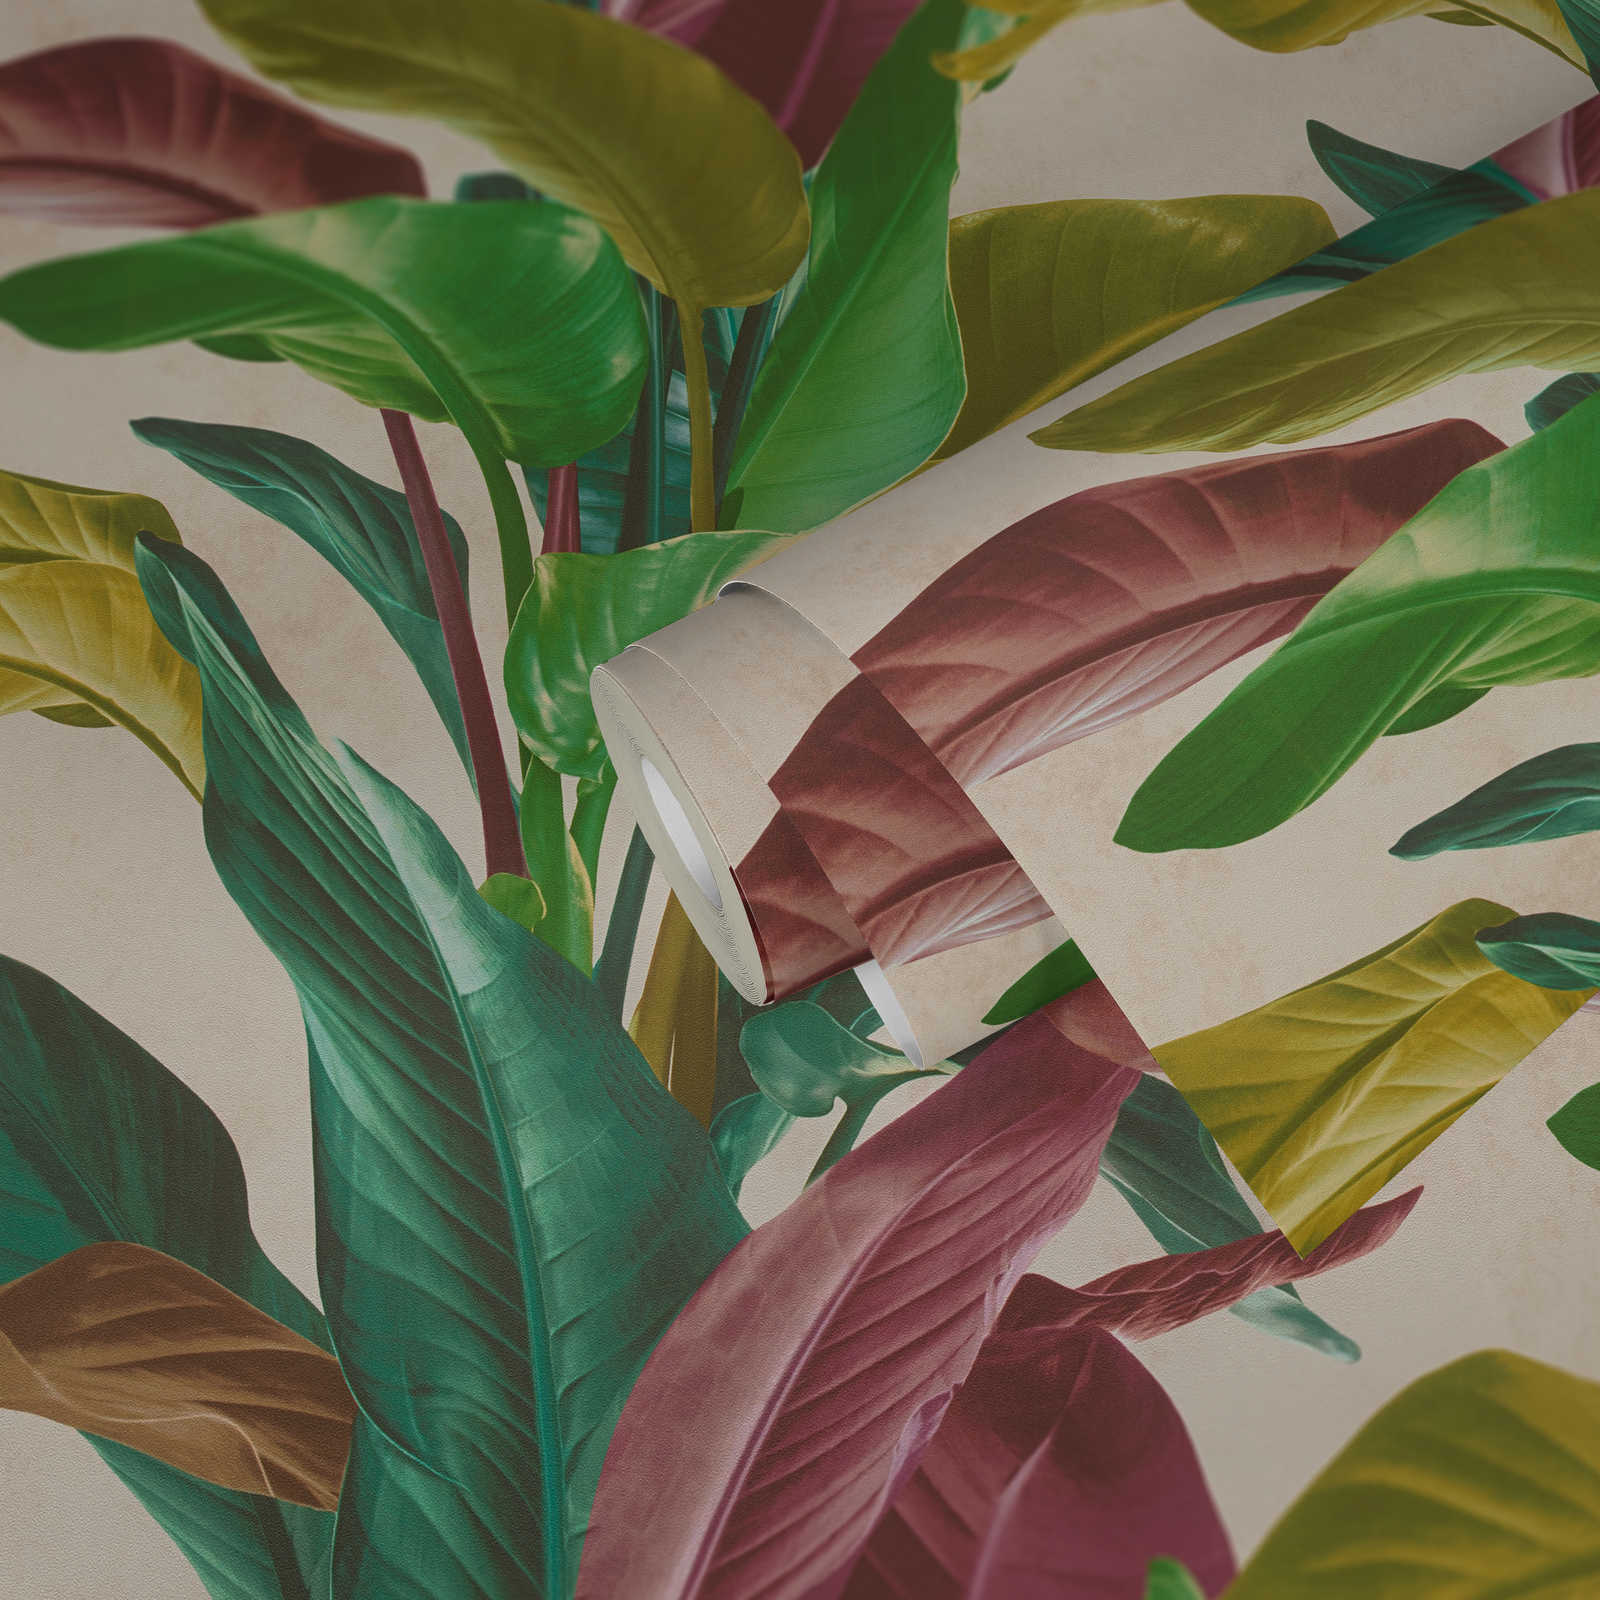             Tapete mit Blätter-Design in leuchtenden Farben – Bunt, Creme, Grün
        